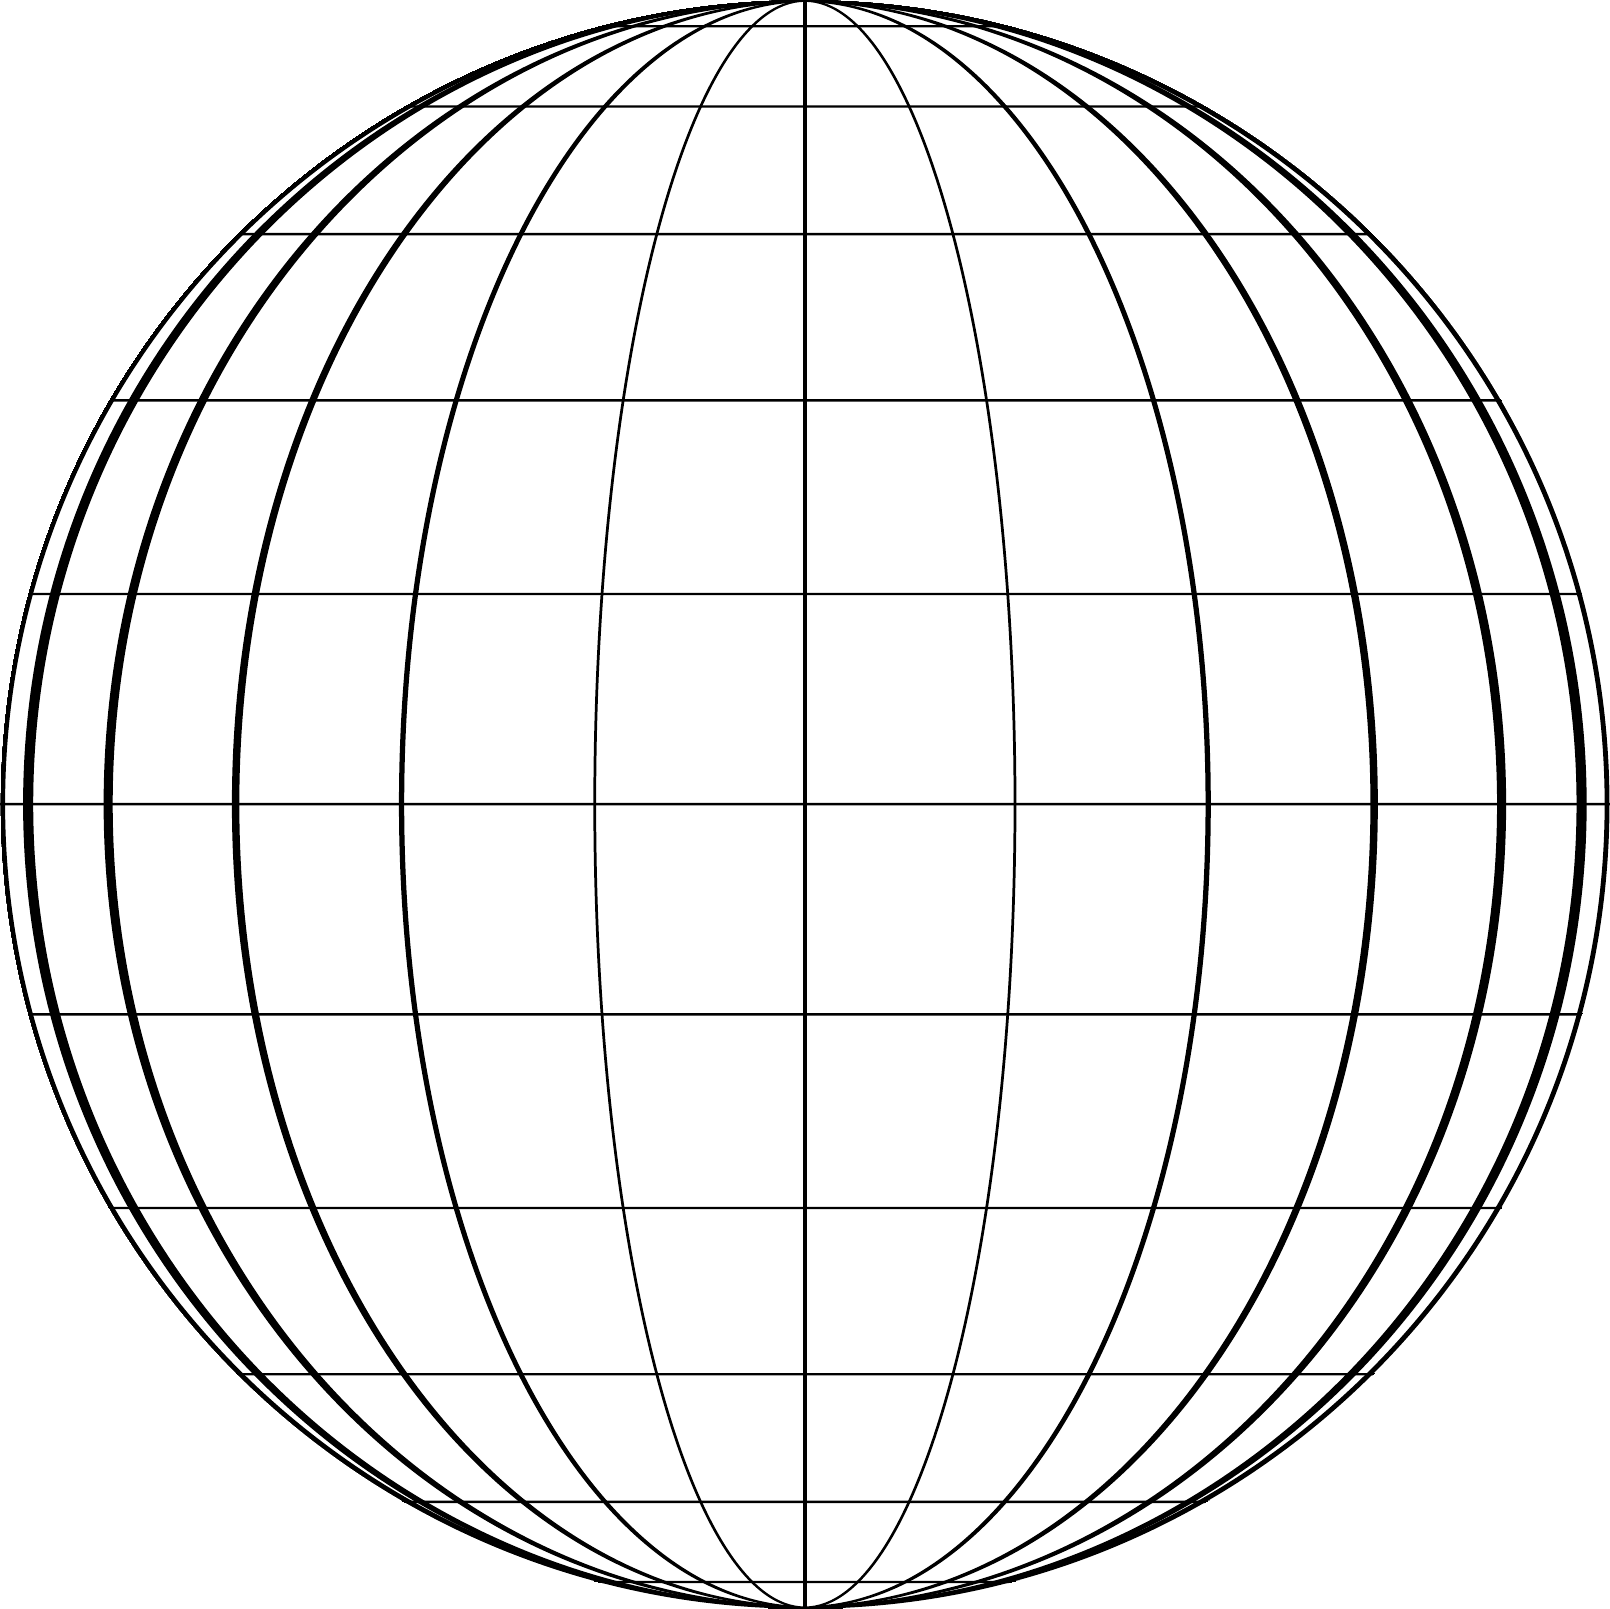 Схематический земной шар. Глобус меридианы параллели Экватор. Градусная сетка на шаре. Градусная сетка земли. Координатная сетка на глобусе.